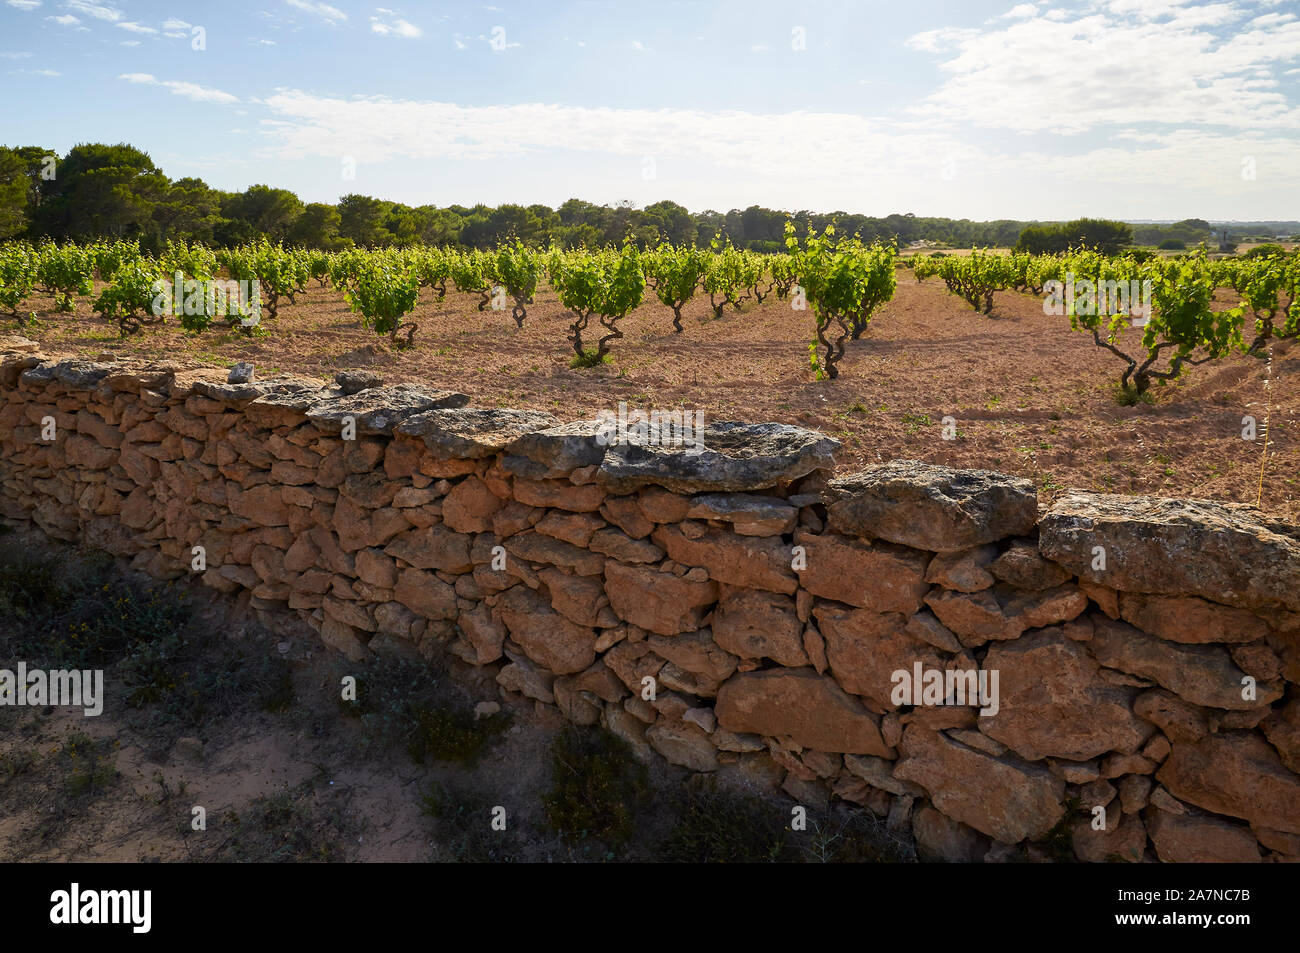 Traditionelle Weinbau in einem Wein Weinreben (Vitis vinifera) Weinberg umgeben von einem trockenen stonewall (Pityuses, Formentera, Balearen, Spanien) Stockfoto